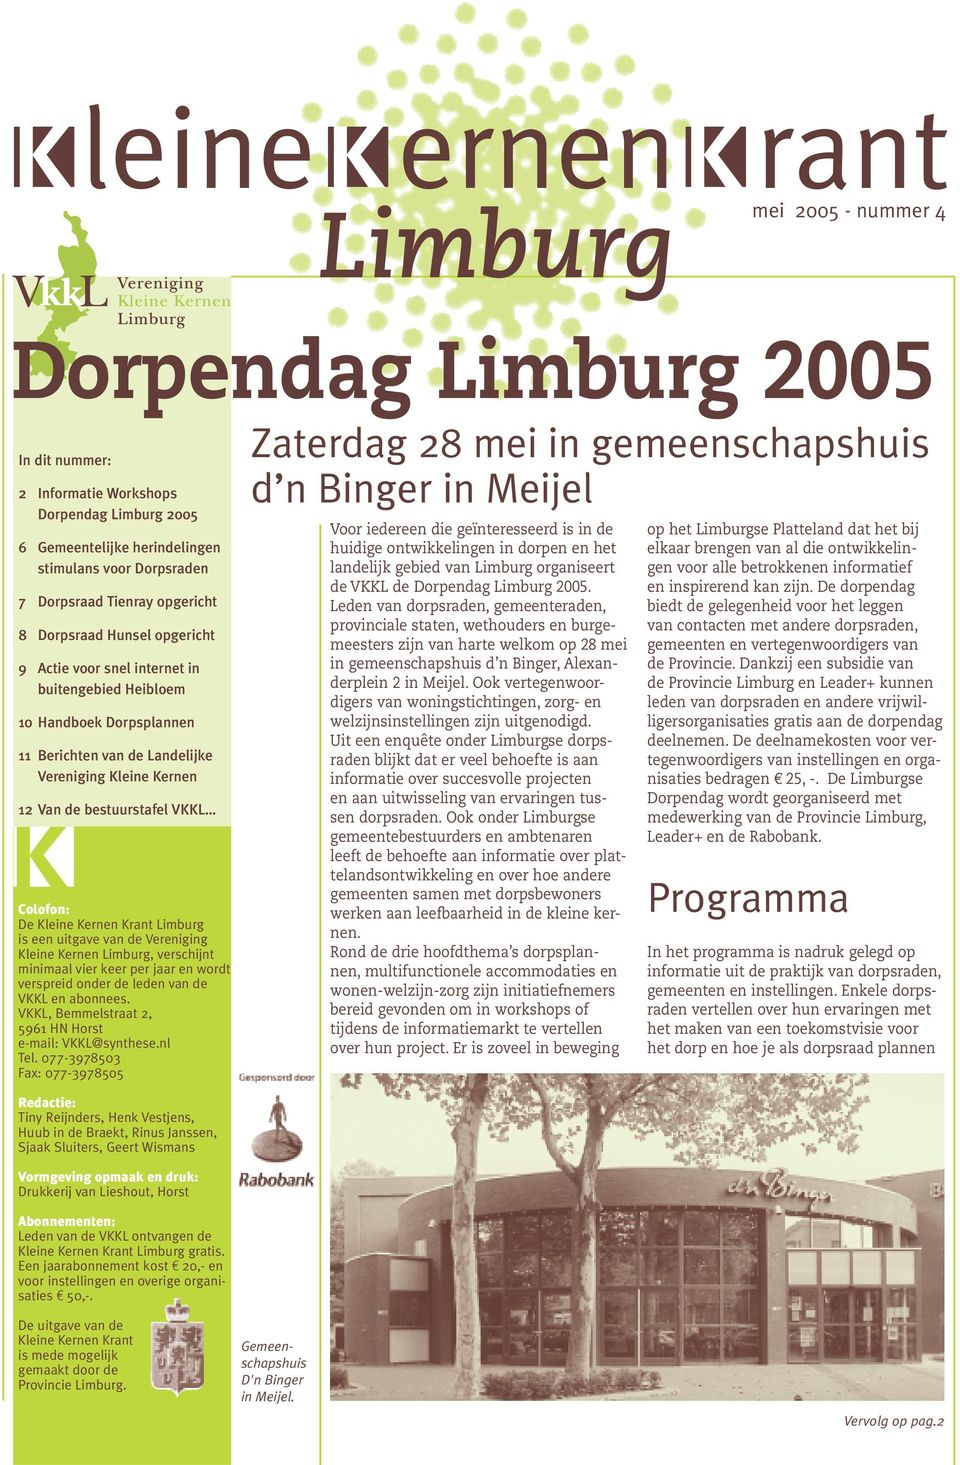 bestuurstafel VKKL Colofon: De Kleine Kernen Krant Limburg is een uitgave van de Vereniging Kleine Kernen Limburg, verschijnt minimaal vier keer per jaar en wordt verspreid onder de leden van de VKKL